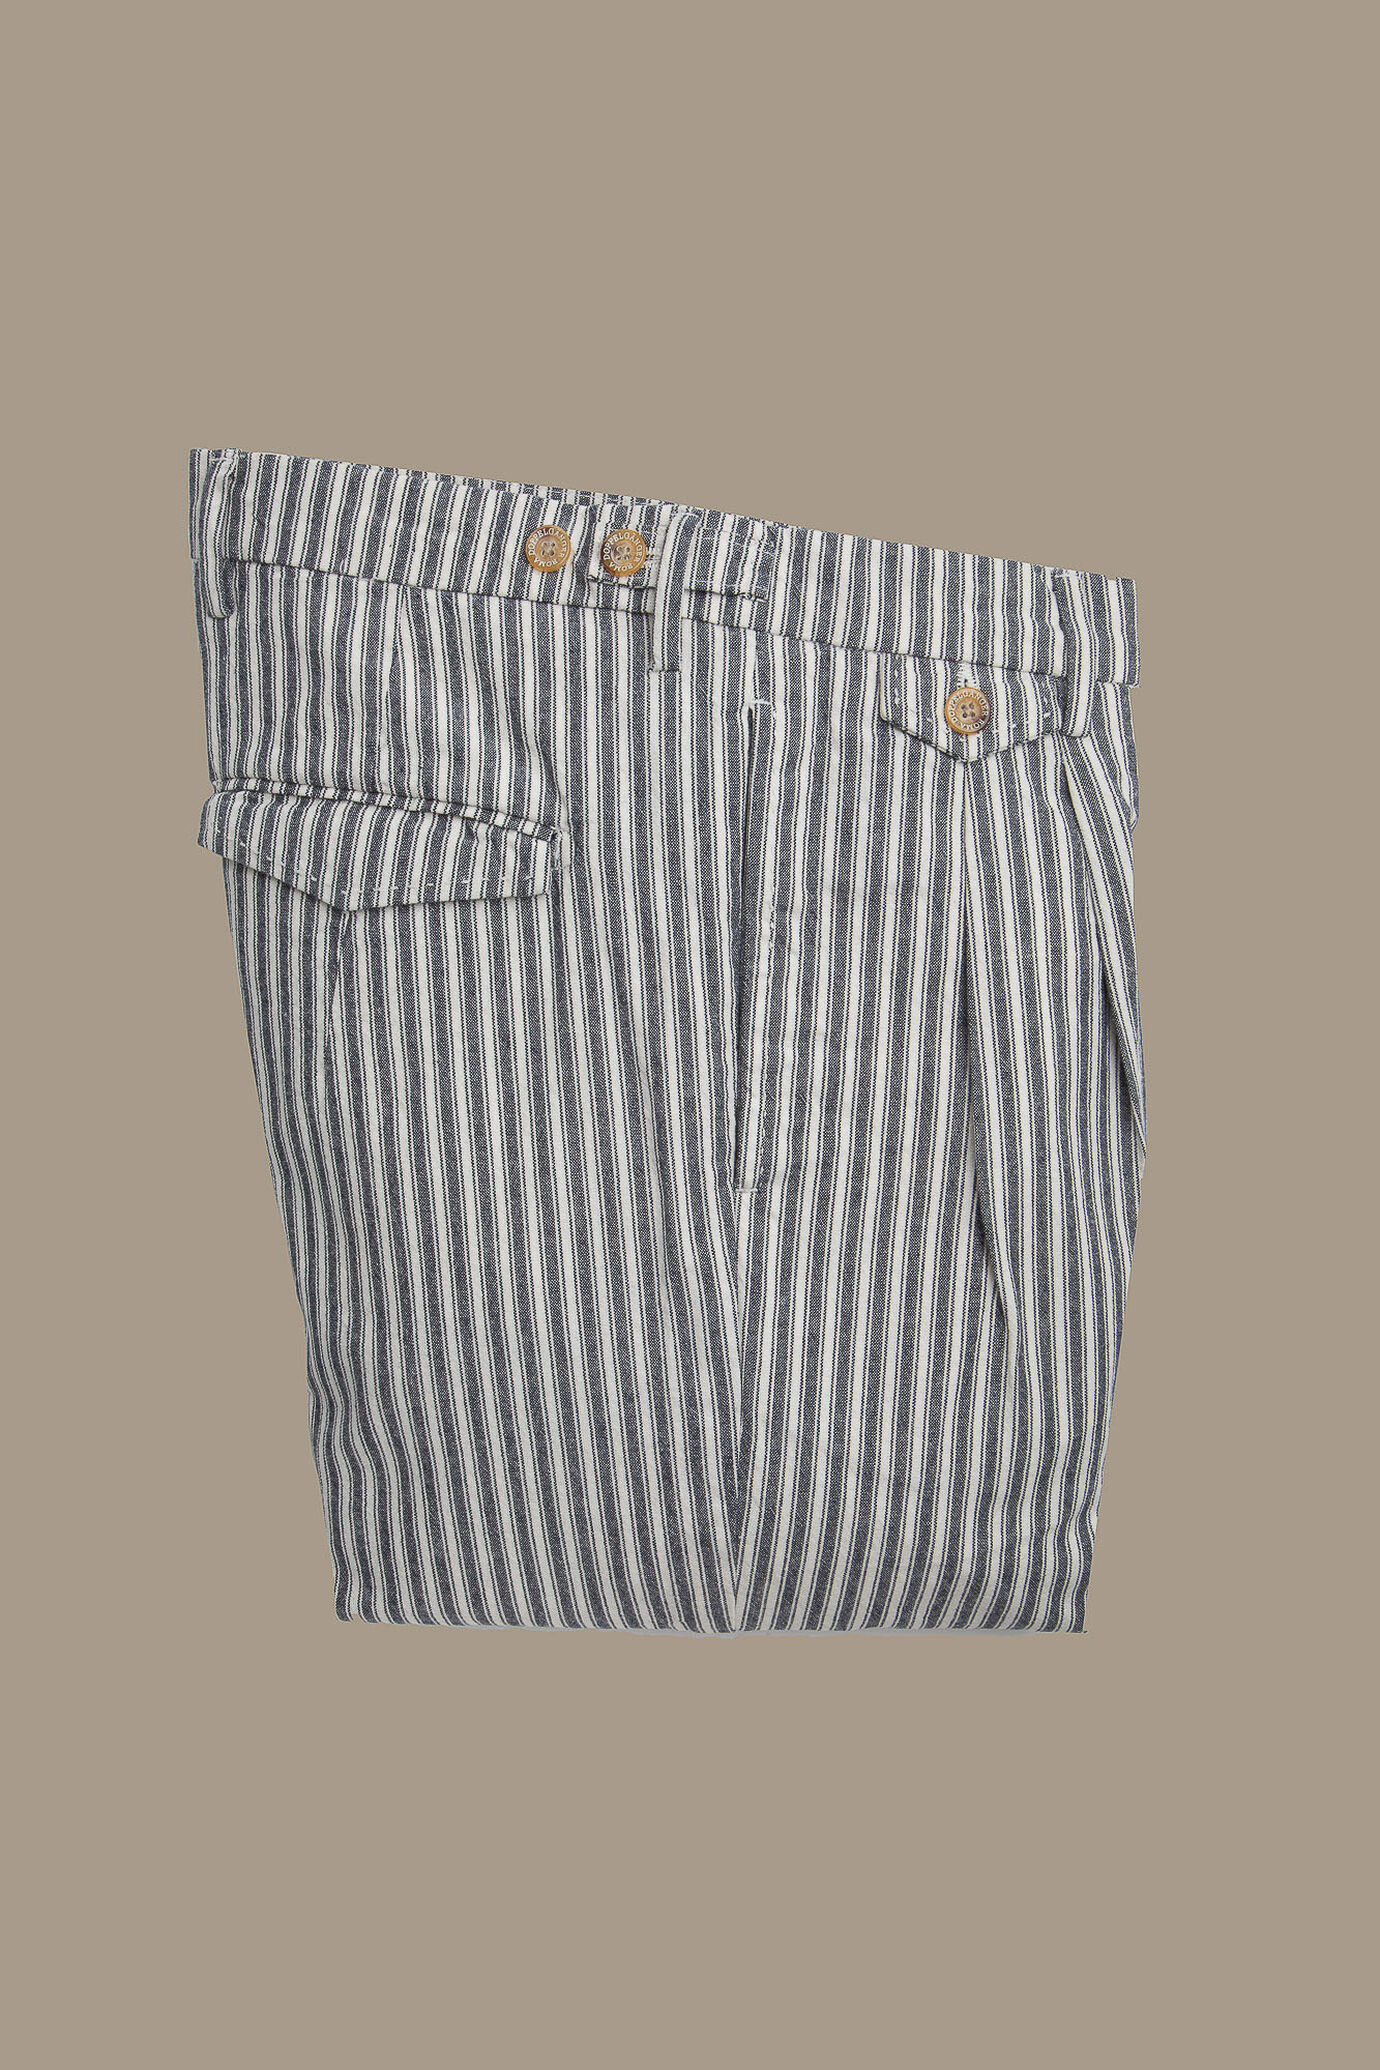 Pantalone uomo chino bicolore con doppia pinces singola e risvolto misto lino e cotone image number 0